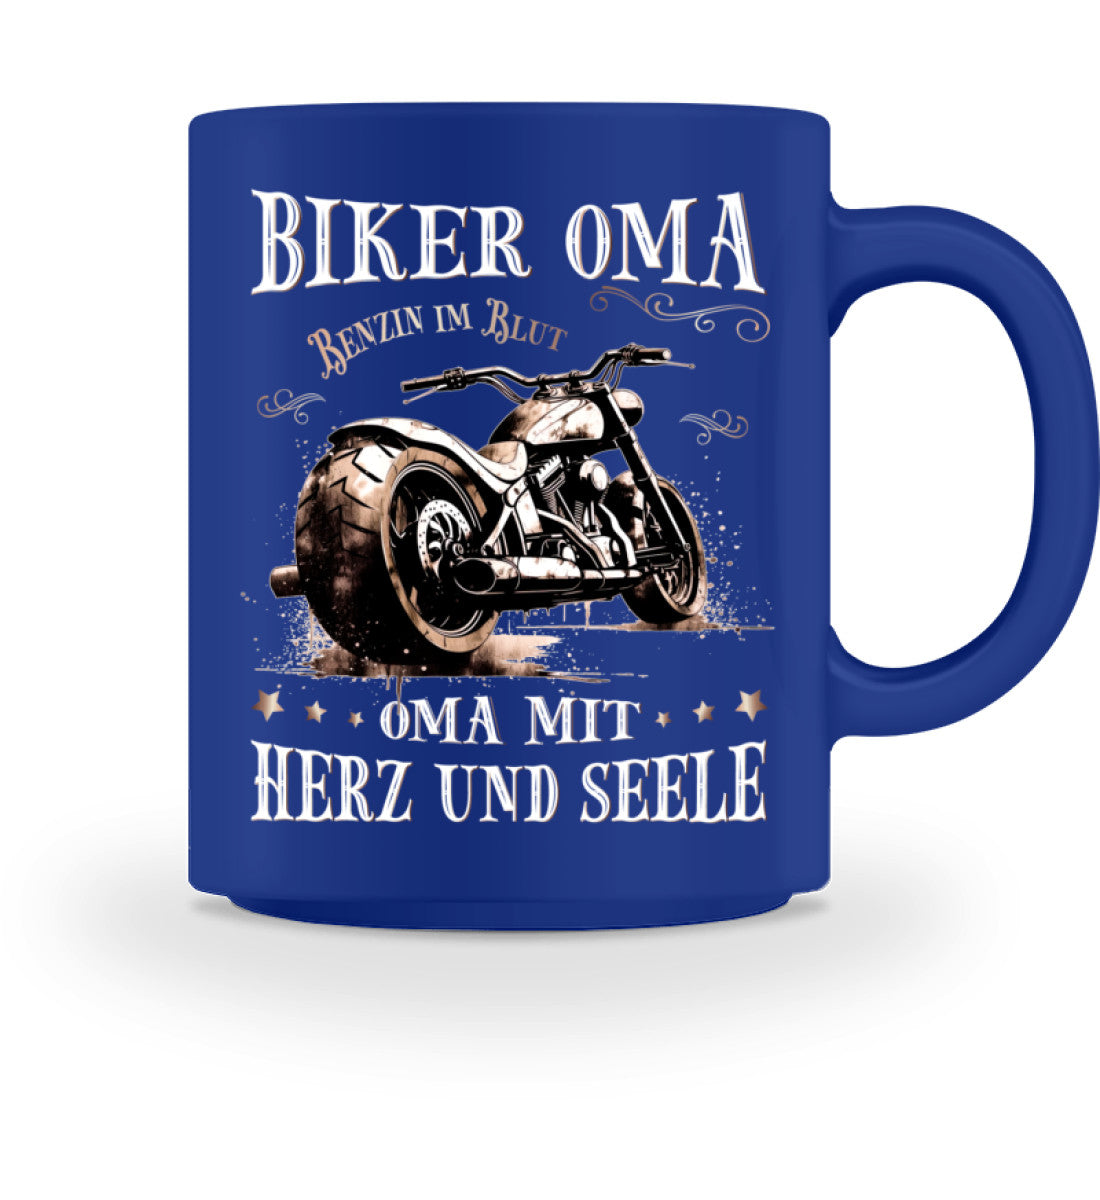 Eine Motorrad Tasse von Wingbikers, mit dem beidseitigen Aufdruck, Biker Oma - Benzin im Blut - Oma mit Herz und Seele, in royal blau.